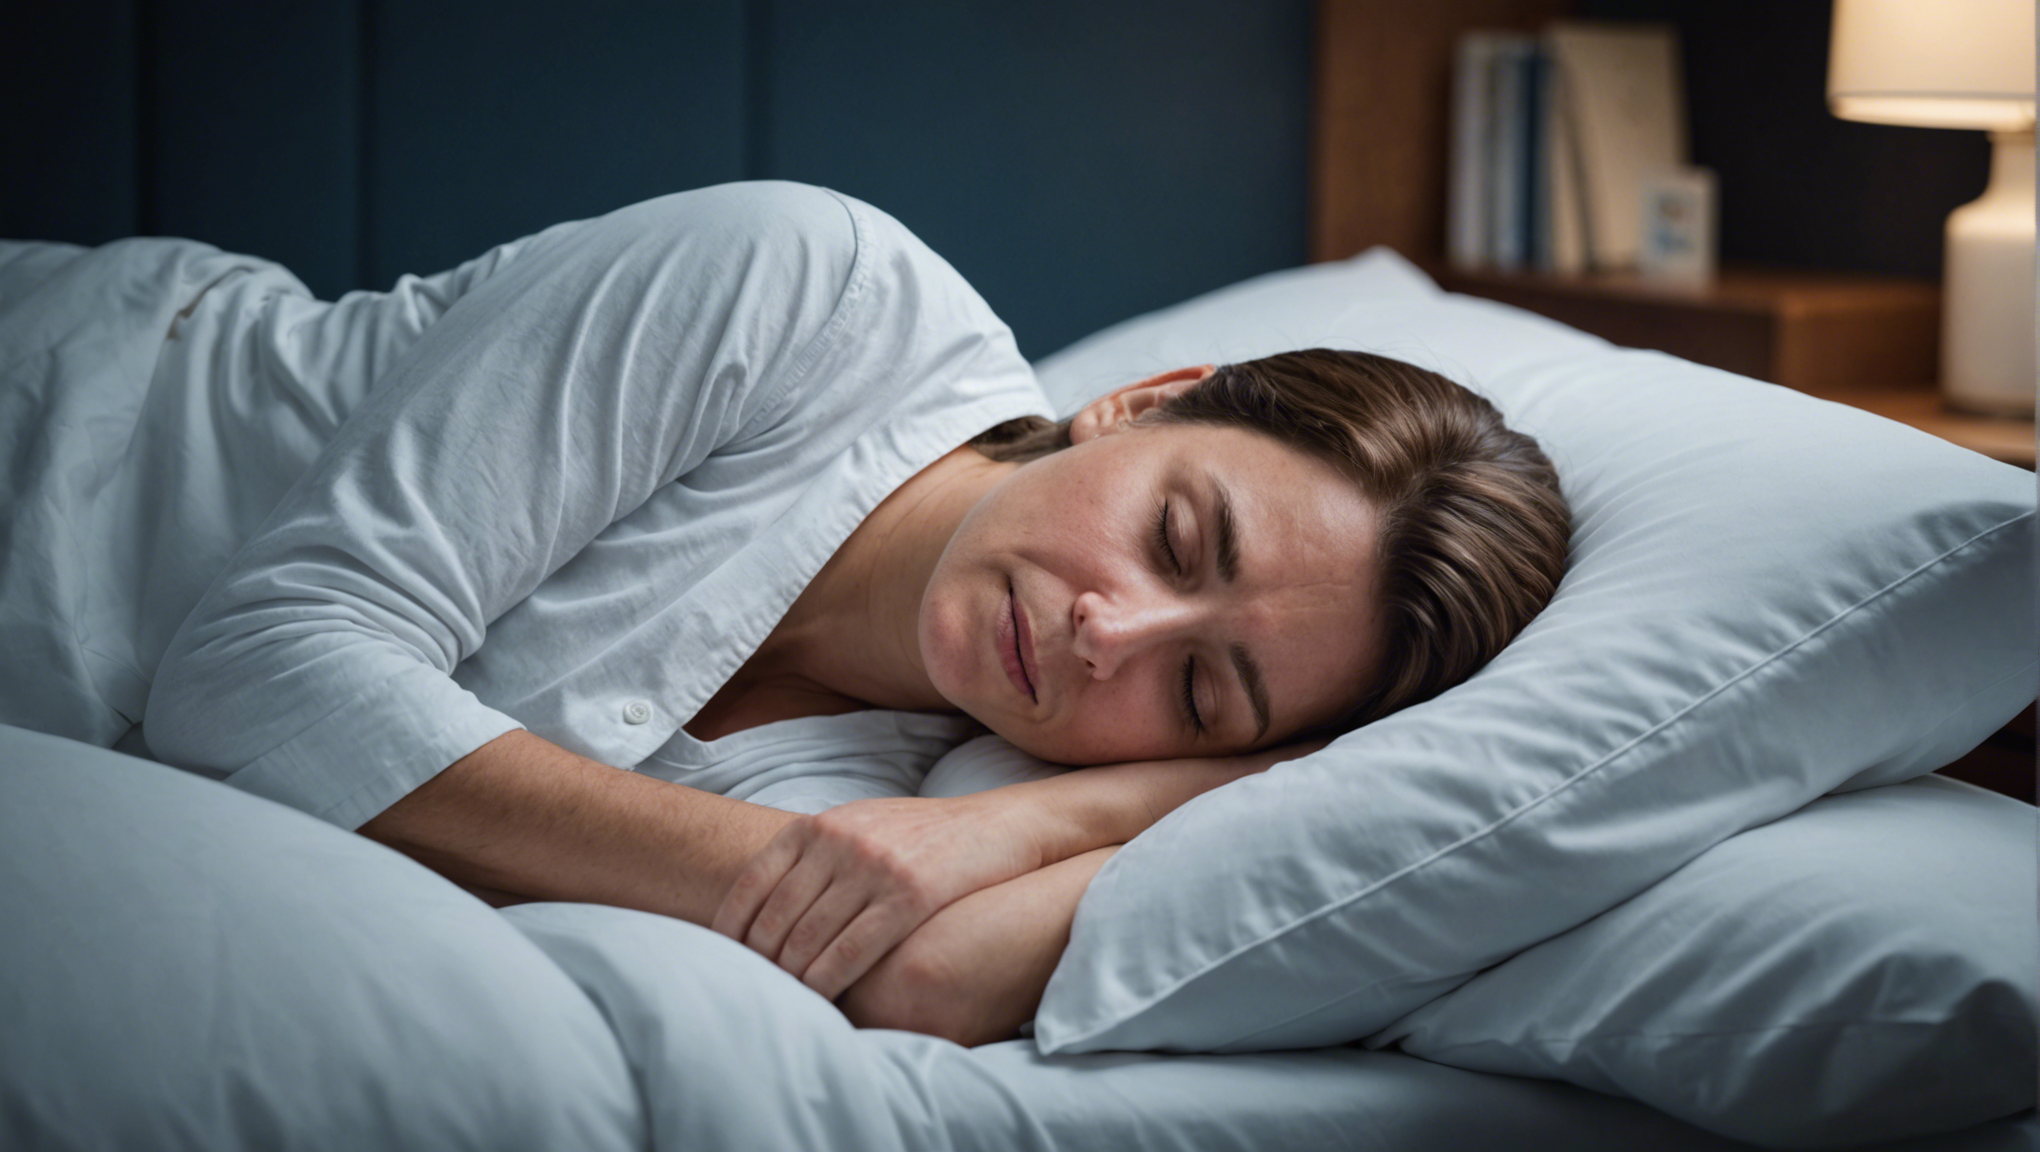 découvrez comment améliorer la qualité de votre sommeil en participant au congrès sur le sommeil. des experts partageront leurs conseils pour des nuits plus reposantes et un bien-être accru.